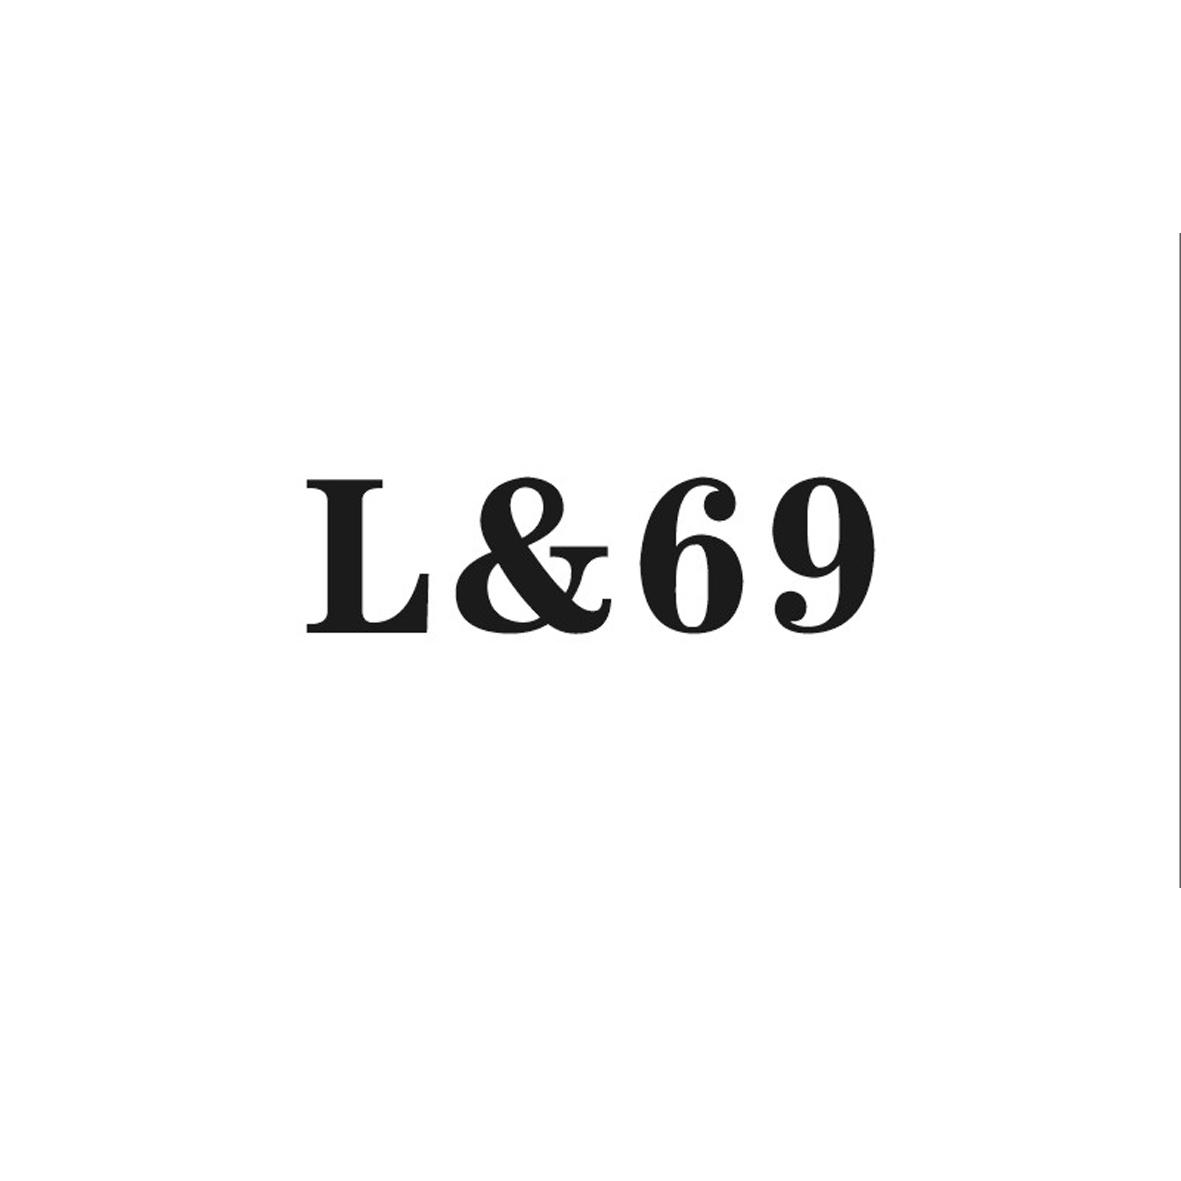 L&69